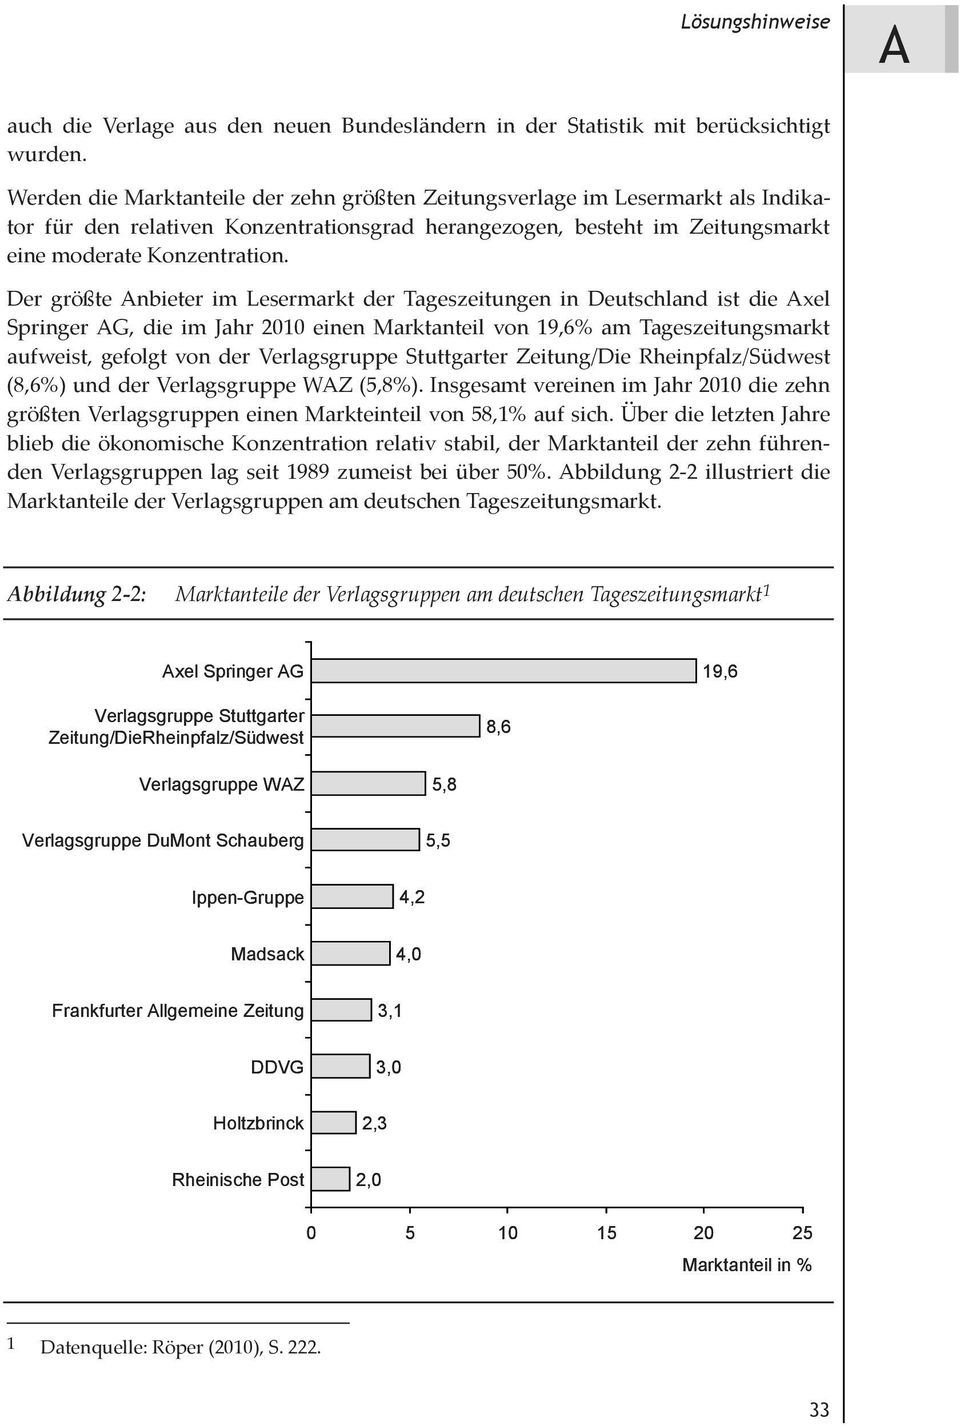 Der größteanbieter im Lesermarkt der Tageszeitungen in Deutschland ist dieaxel SpringerAG, die im Jahr 2010 einen Marktanteil von 19,6% am Tageszeitungsmarkt